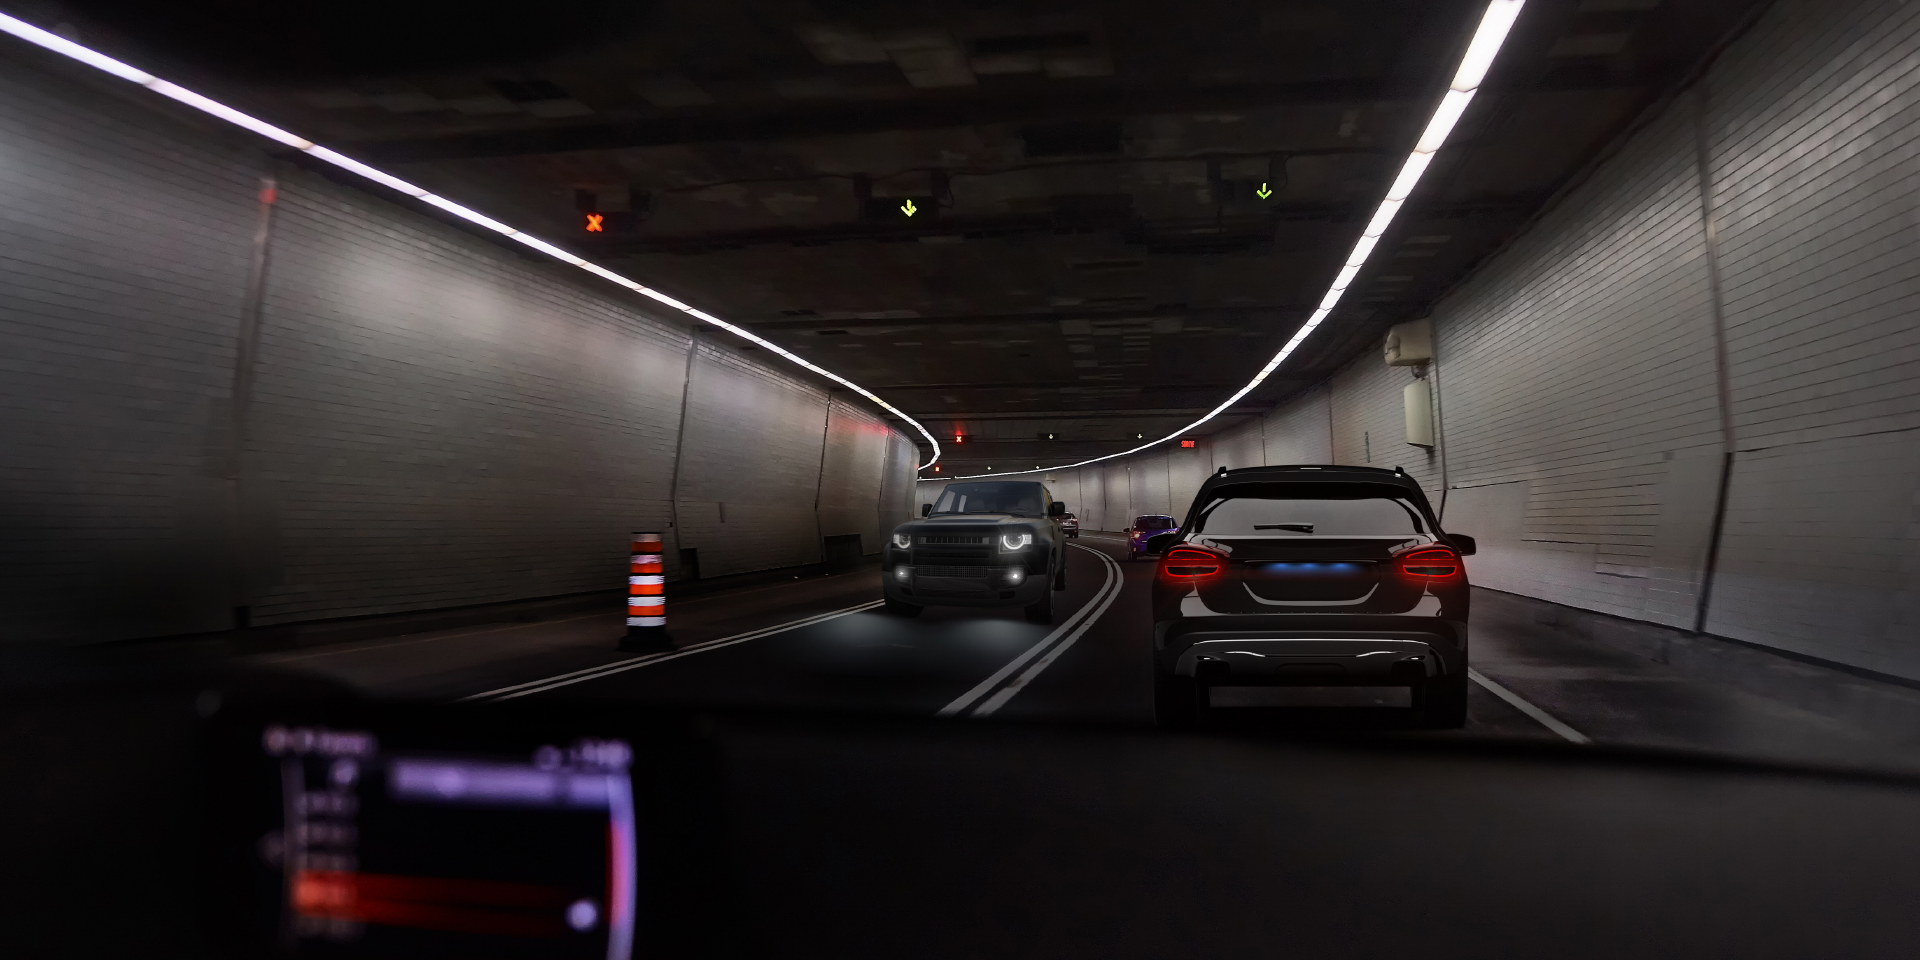 Twee beelden van het gezichtspunt van een bestuurder in een tunnel met inkomend verkeer, waarbij op het ene beeld schittering van de auto en de tunnelverlichting te zien is en op het andere beeld duidelijk verminderde schittering.